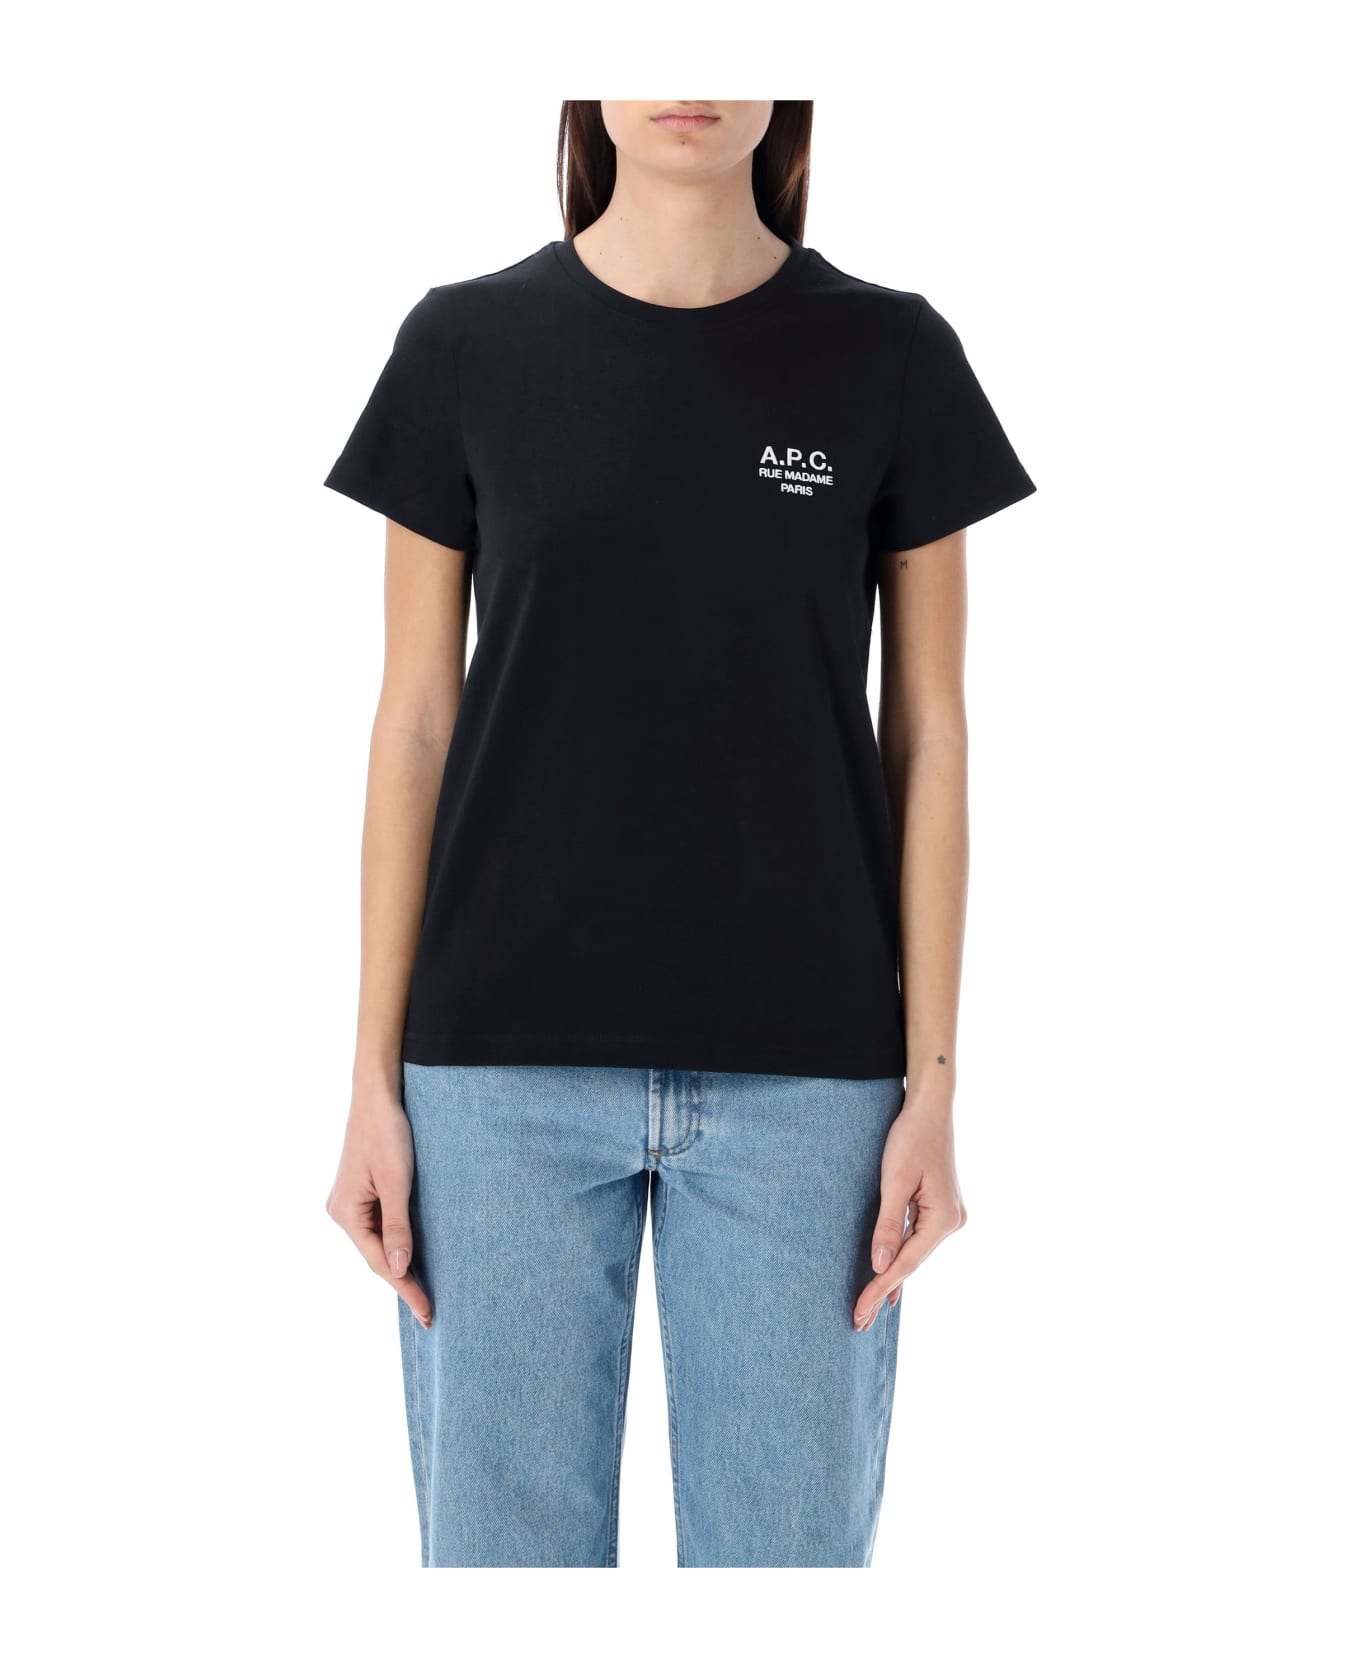 A.P.C. Denise T-shirt - BLACK